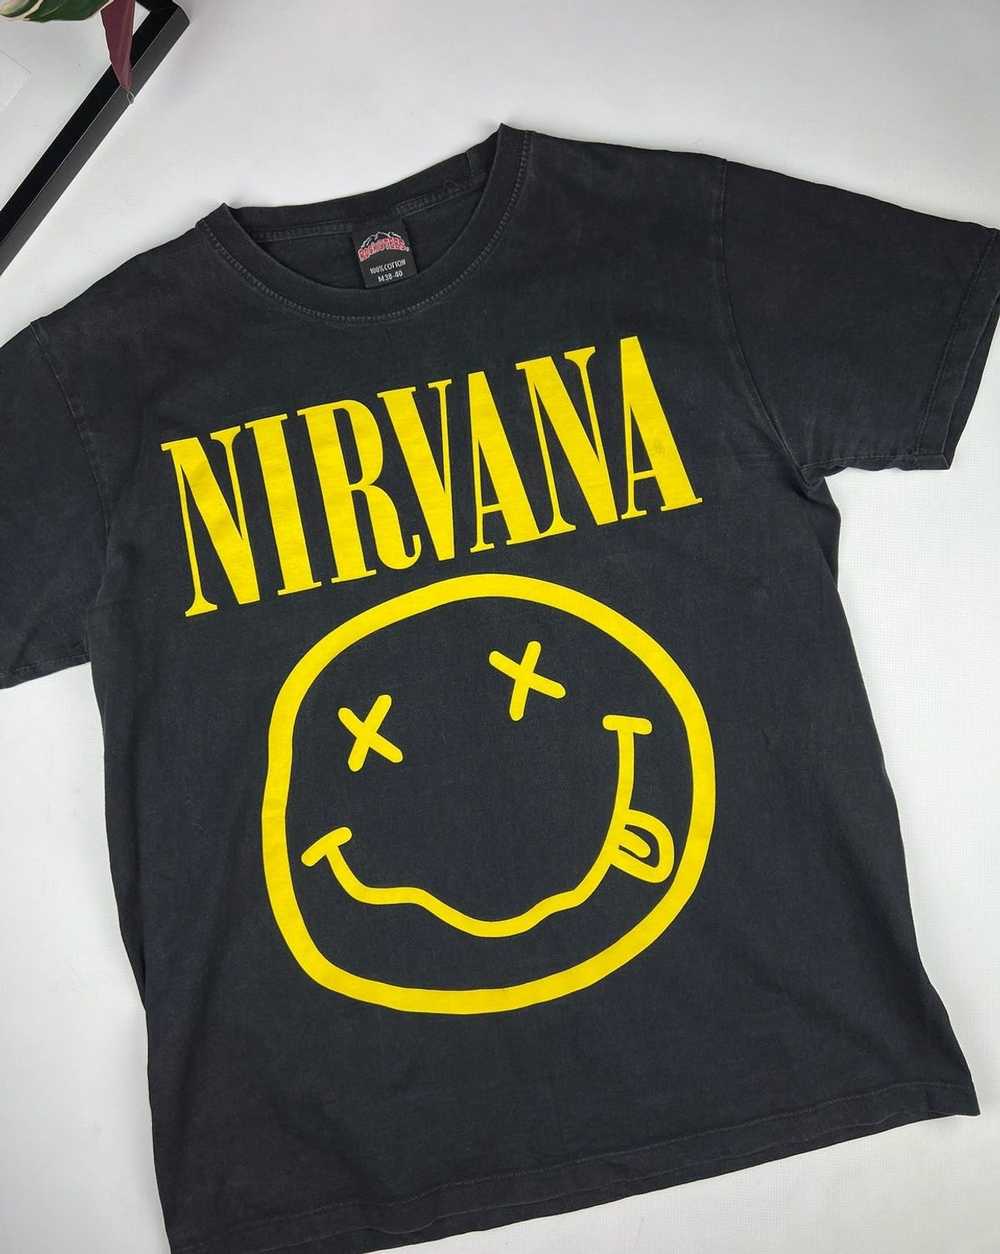 Band Tees × Nirvana × Rock T Shirt 90s vintage Ni… - image 3